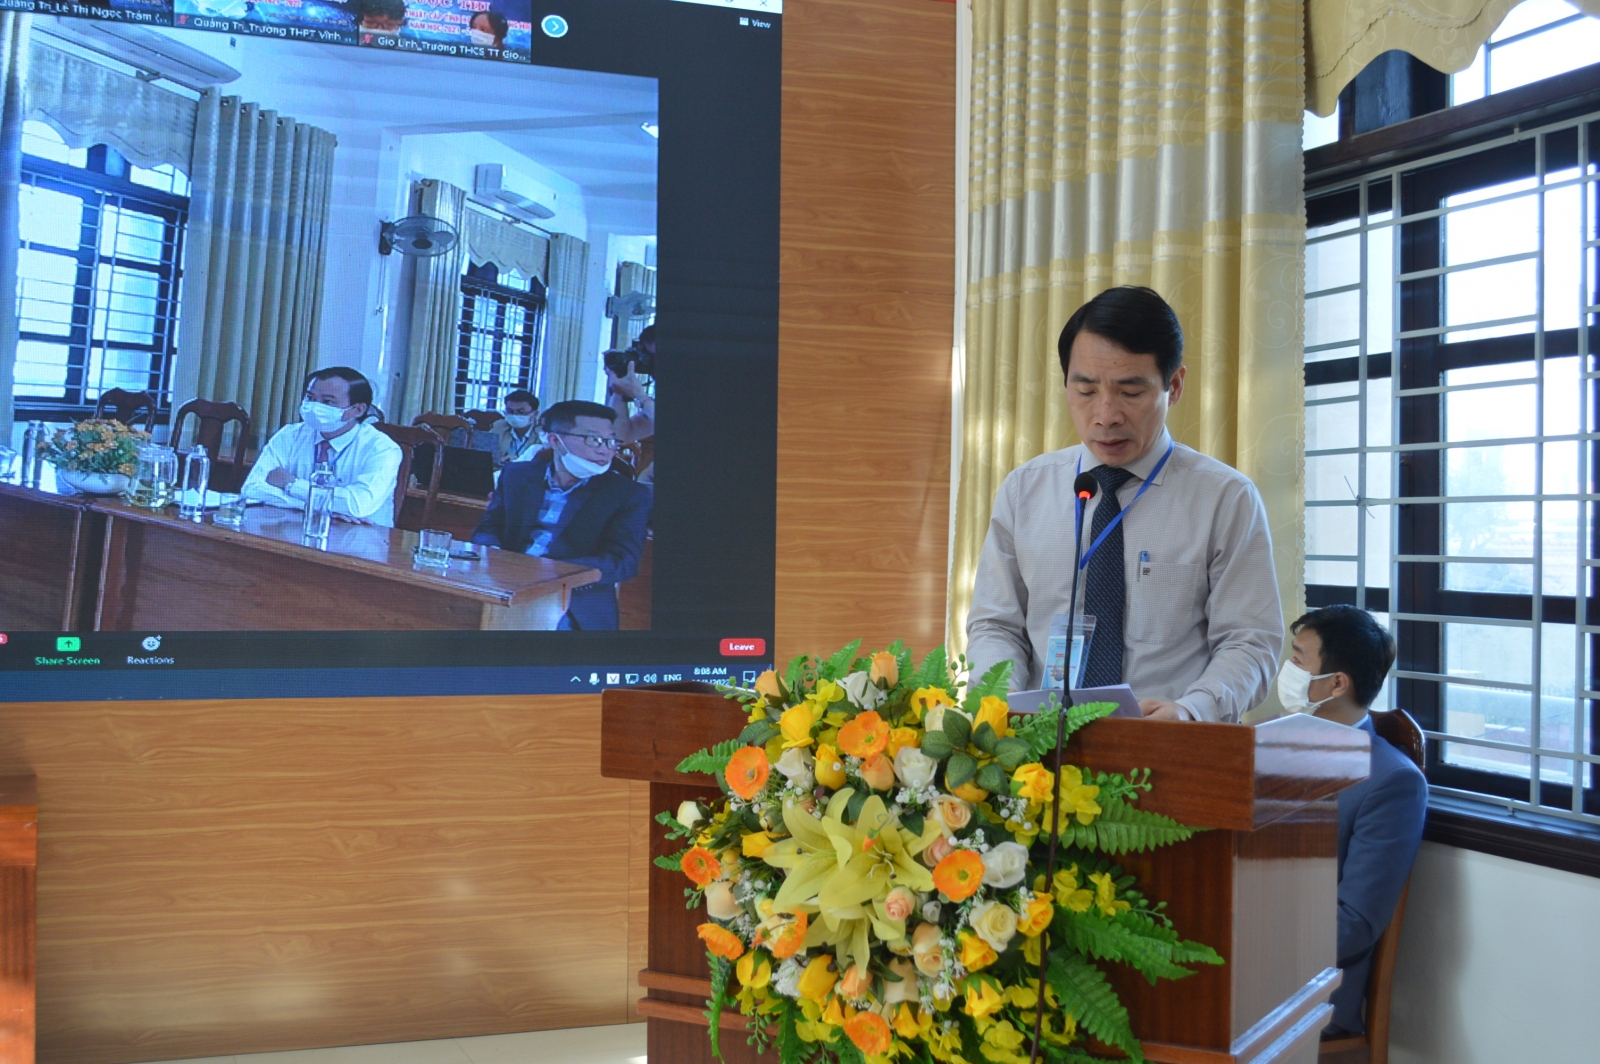 98 dự án tham gia Cuộc thi Khoa học kĩ thuật cho học sinh trung học ở Quảng Trị - Ảnh minh hoạ 2